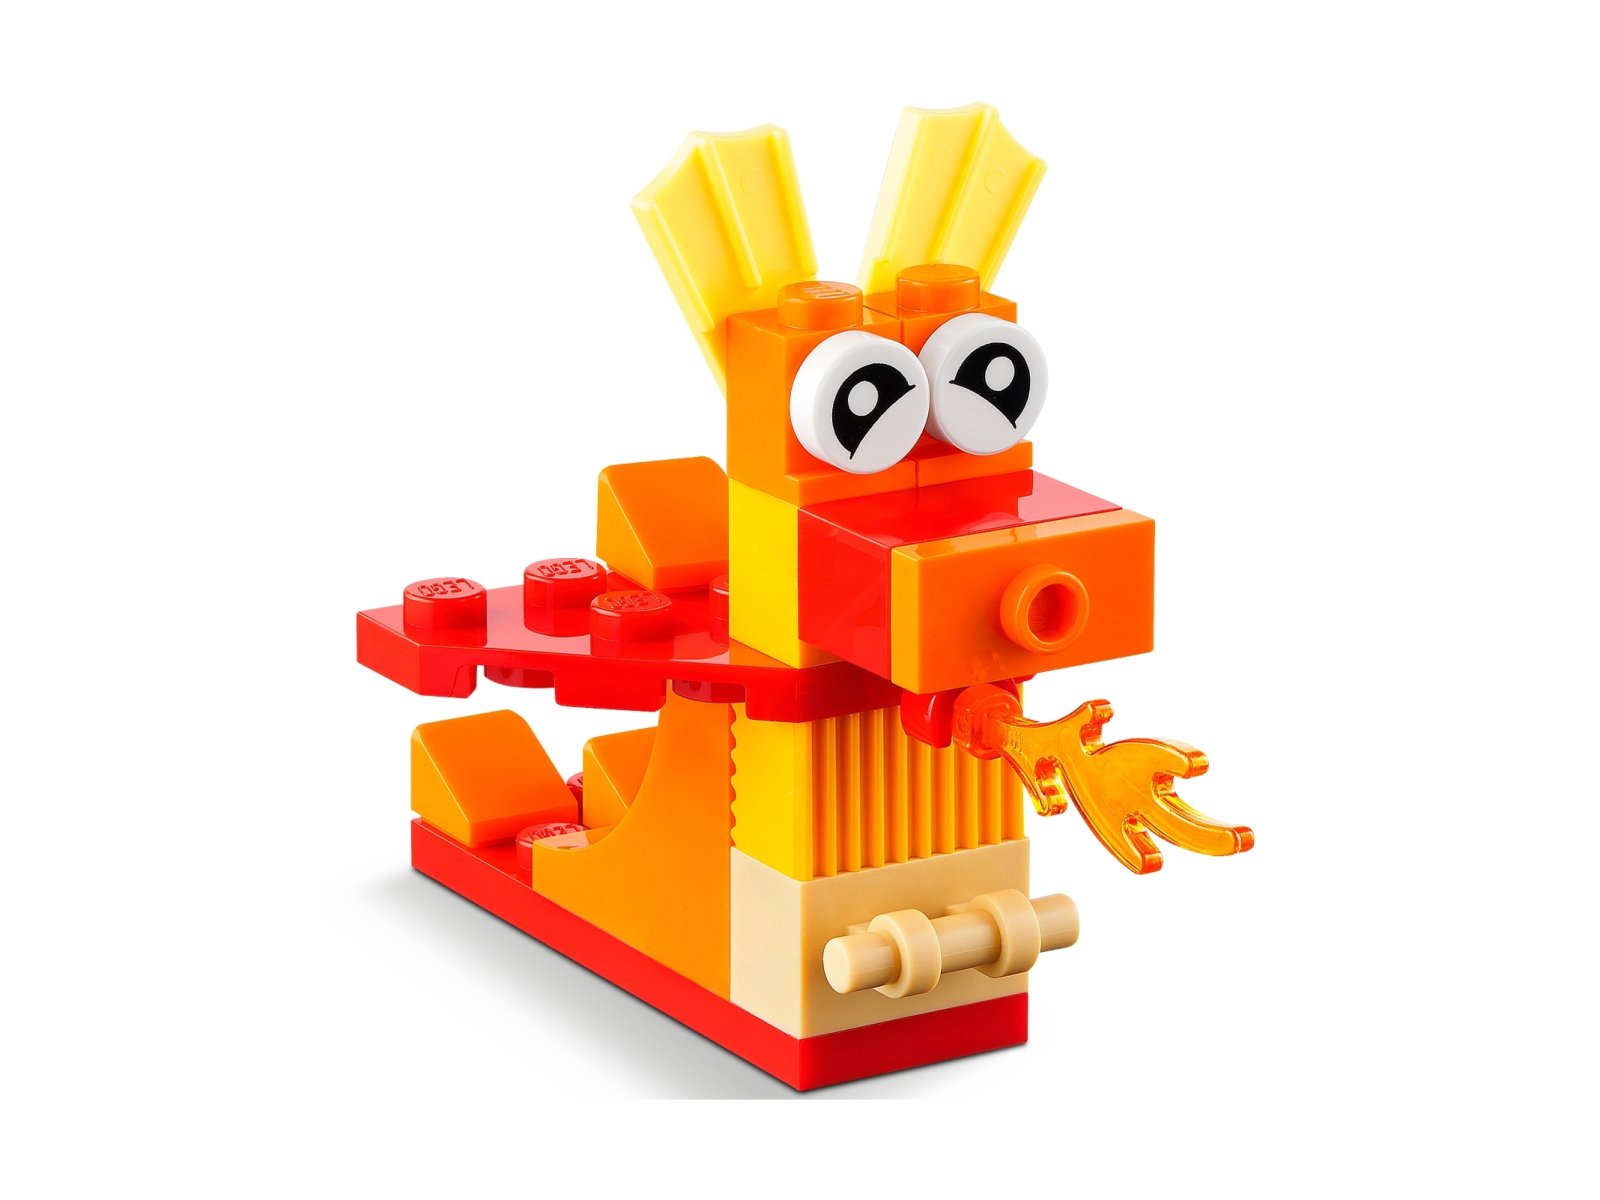 LEGO 11017 Classic Kreatywne potwory